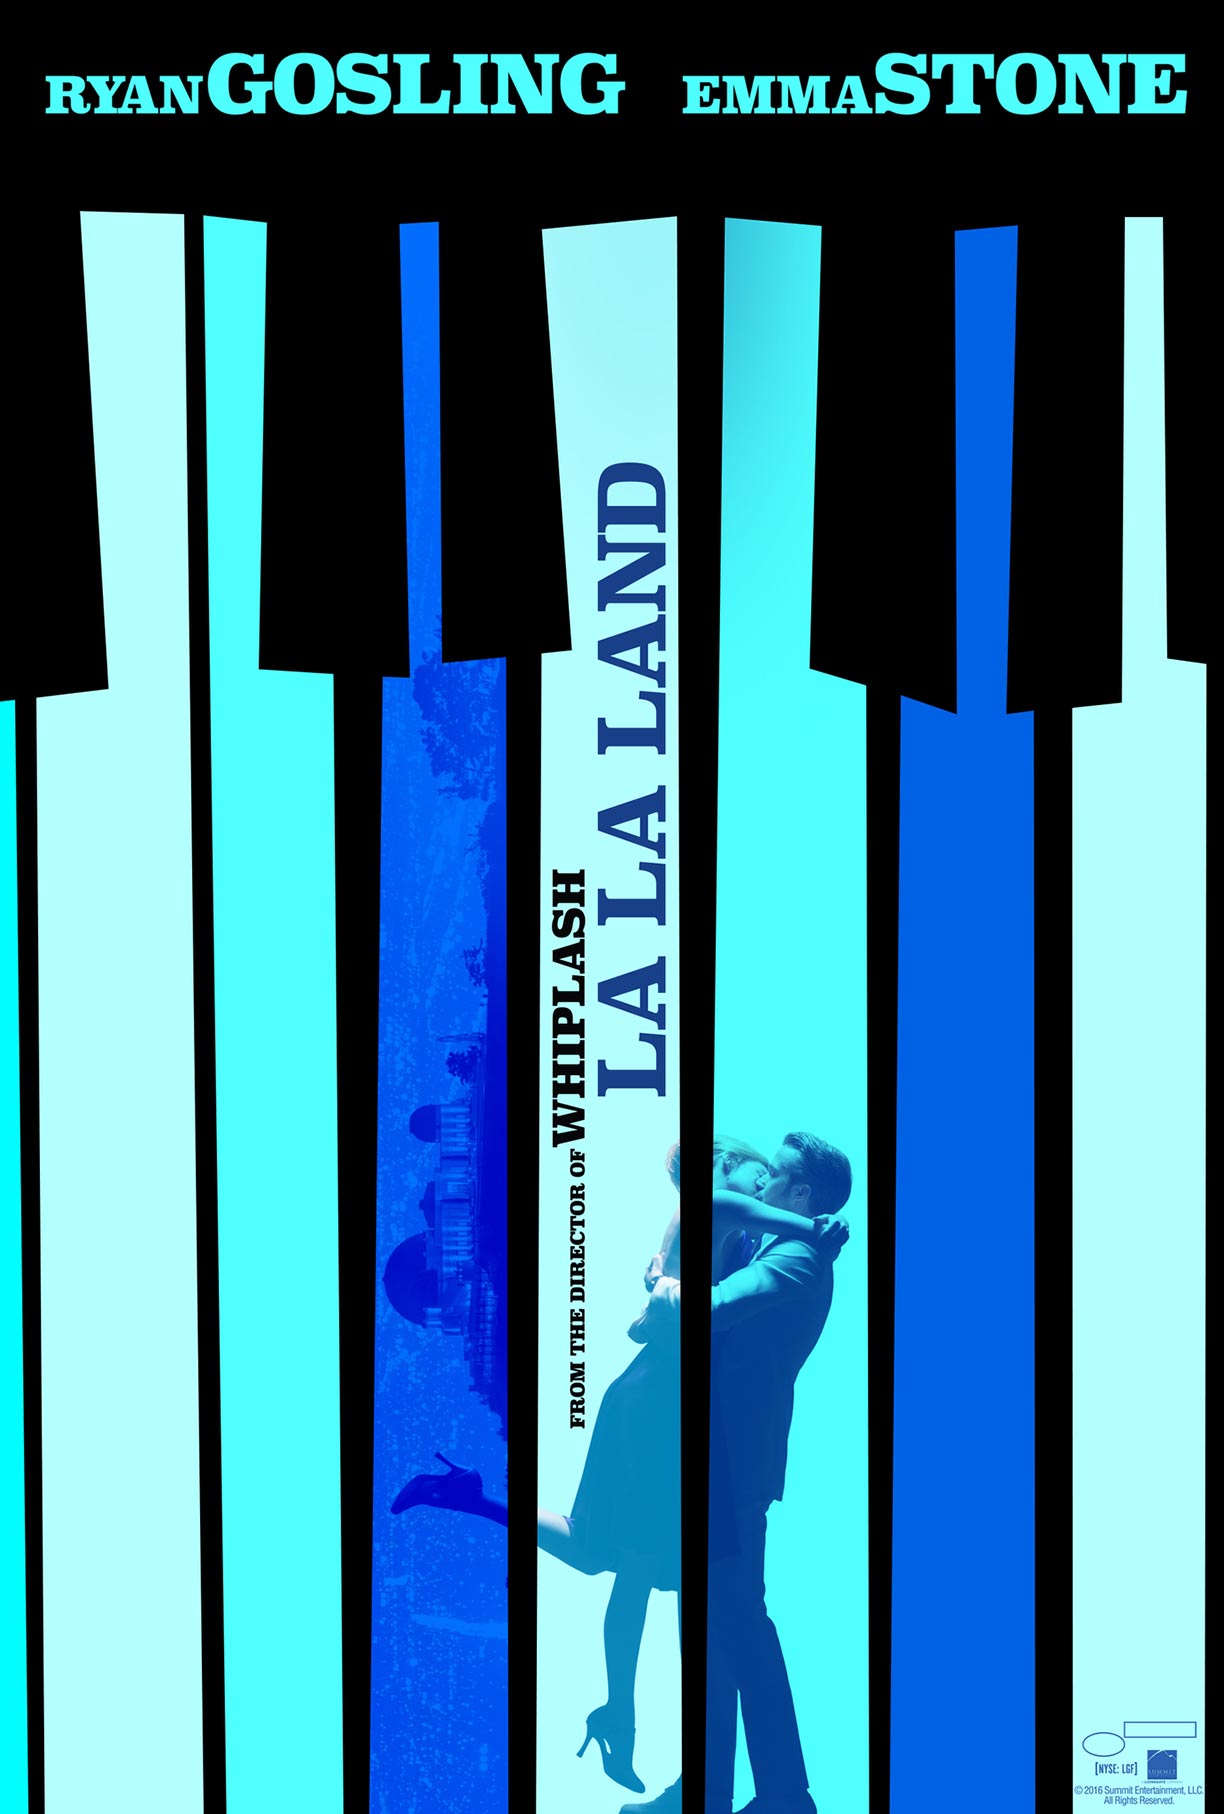 Poster di La La Land